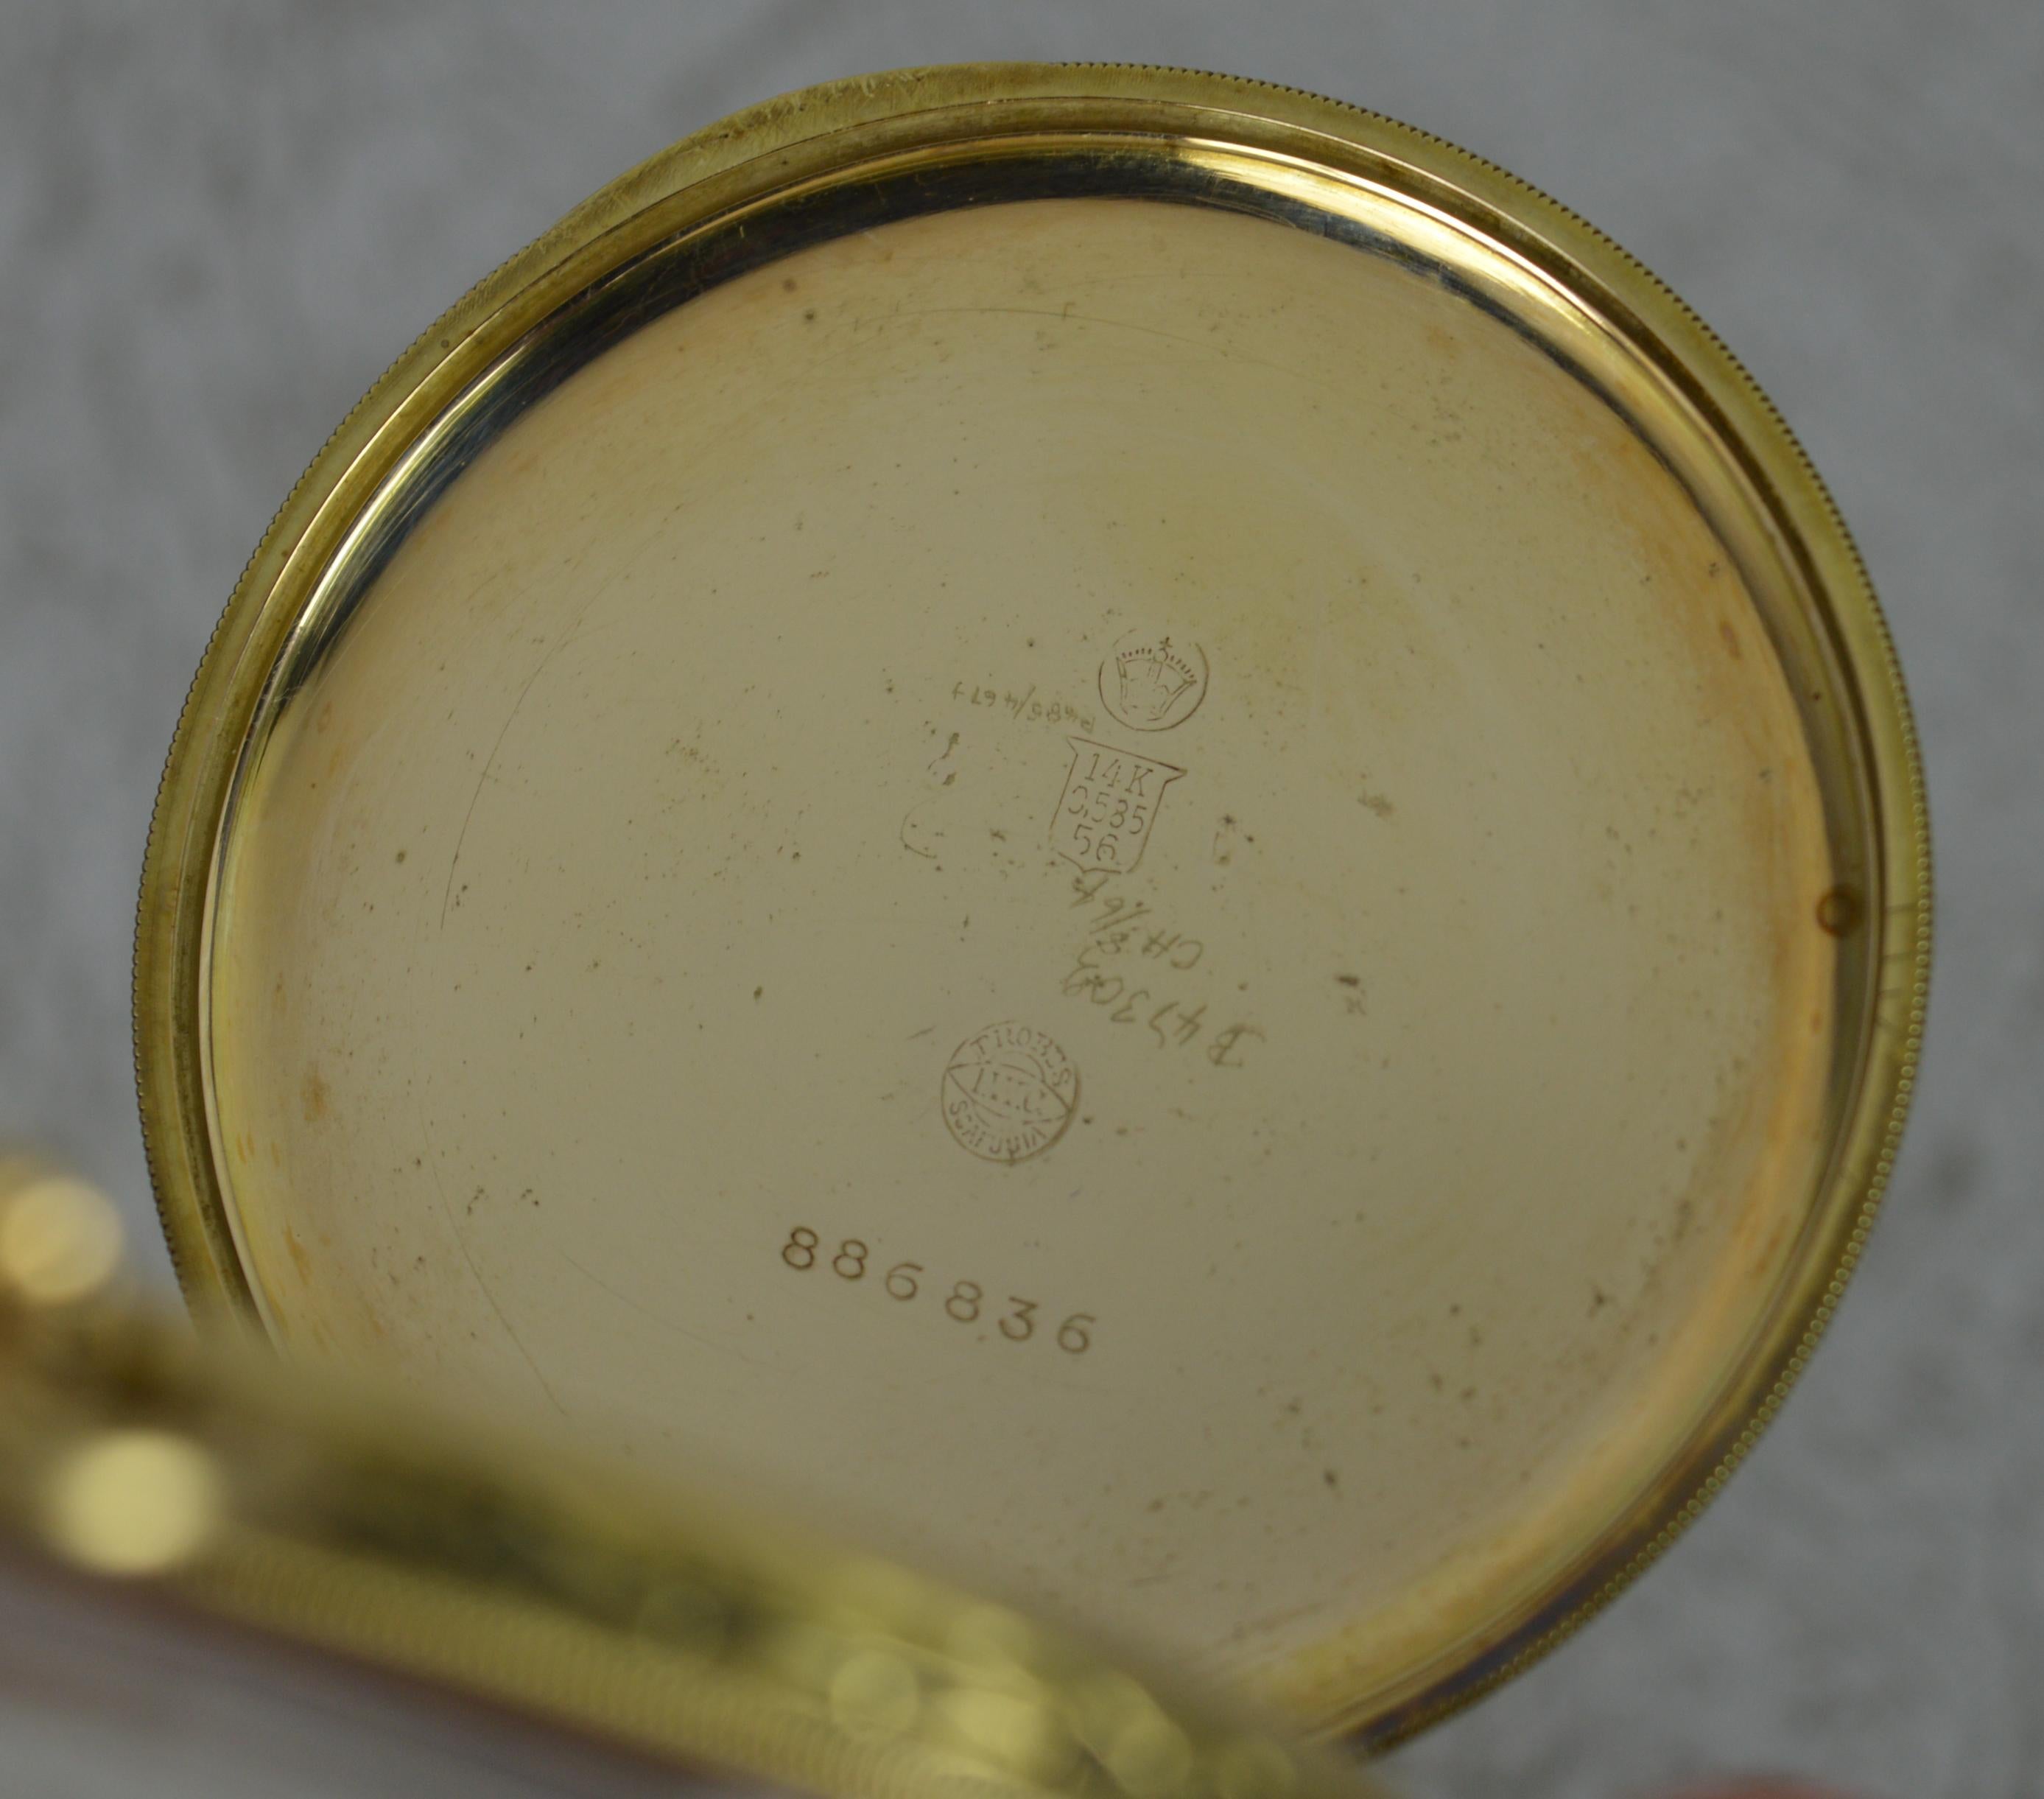 Women's IWC Schaffhausen Art Deco Solid 14 Carat Gold Pocket Watch, Working